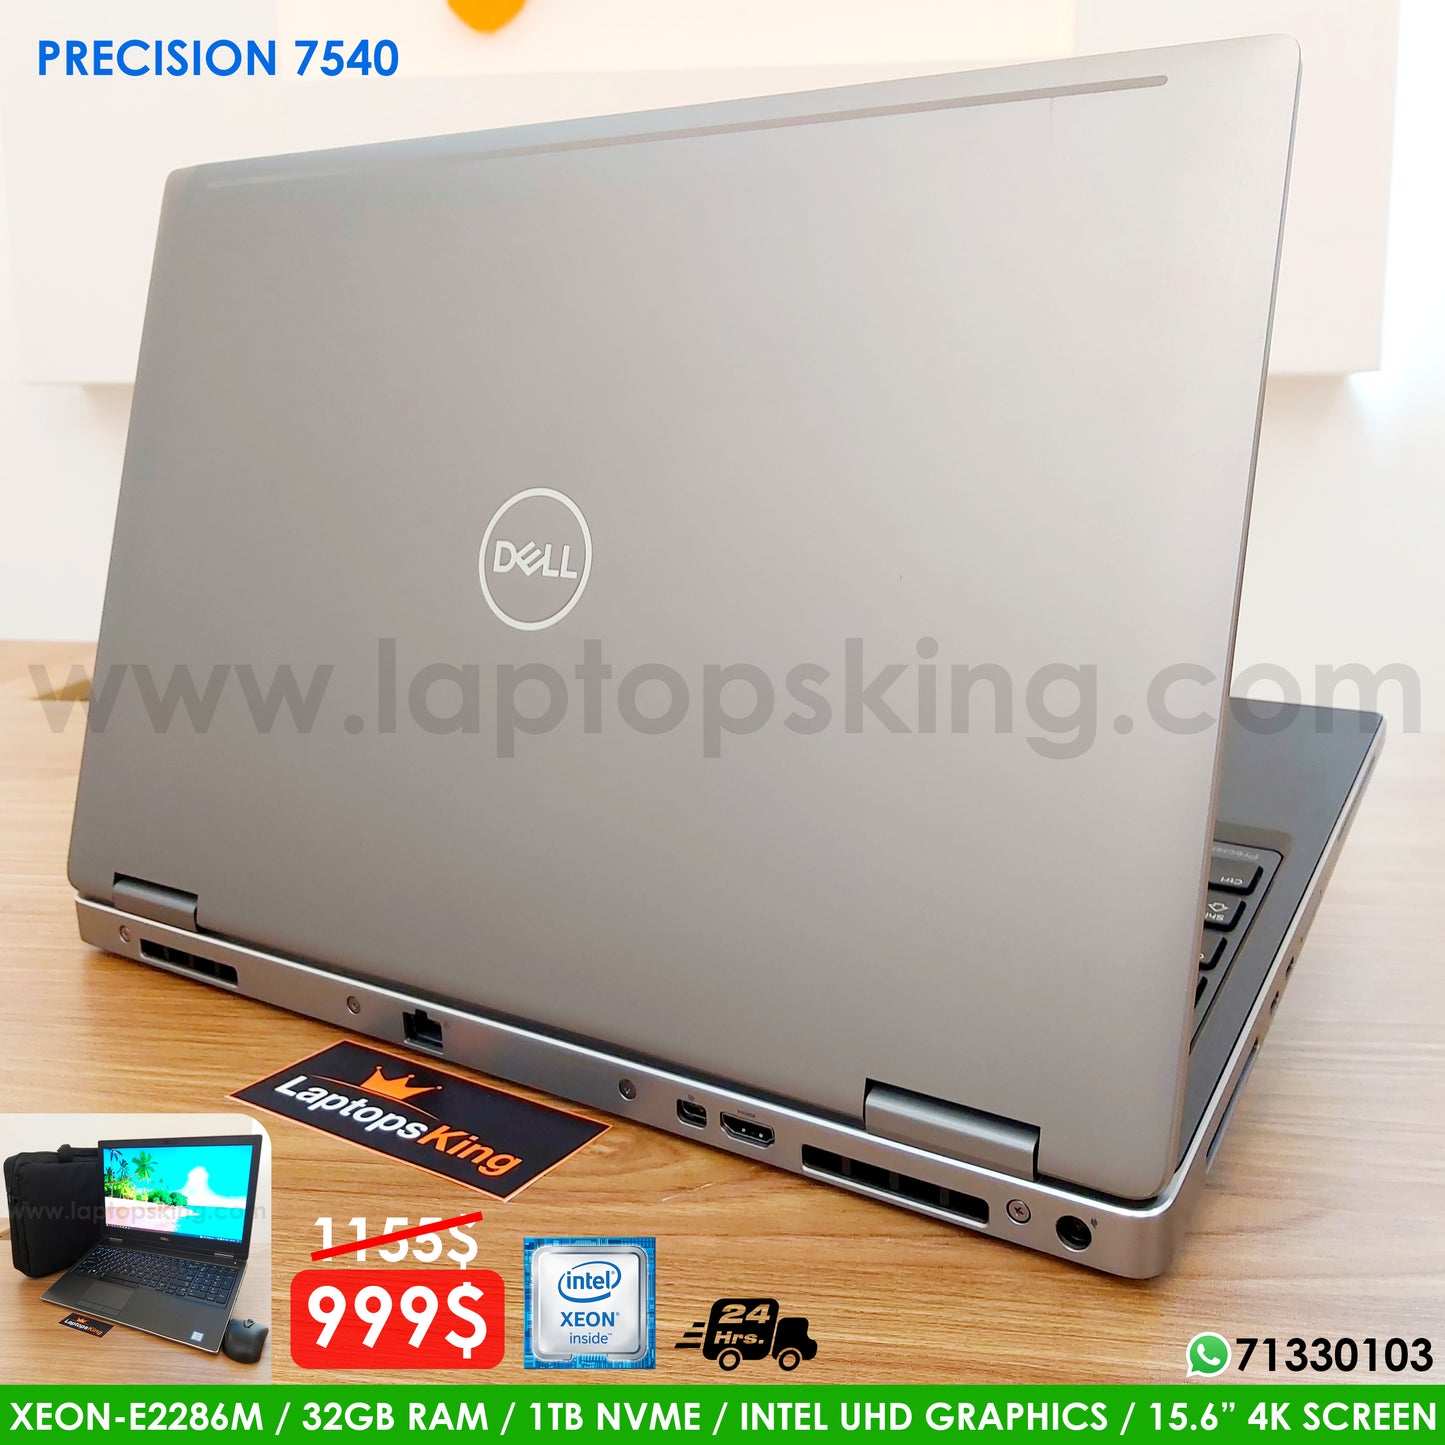 Dell Precision 7540 Xeon E-2286m 32gb Ram 1Tb Nvme Laptop (New Open Box)